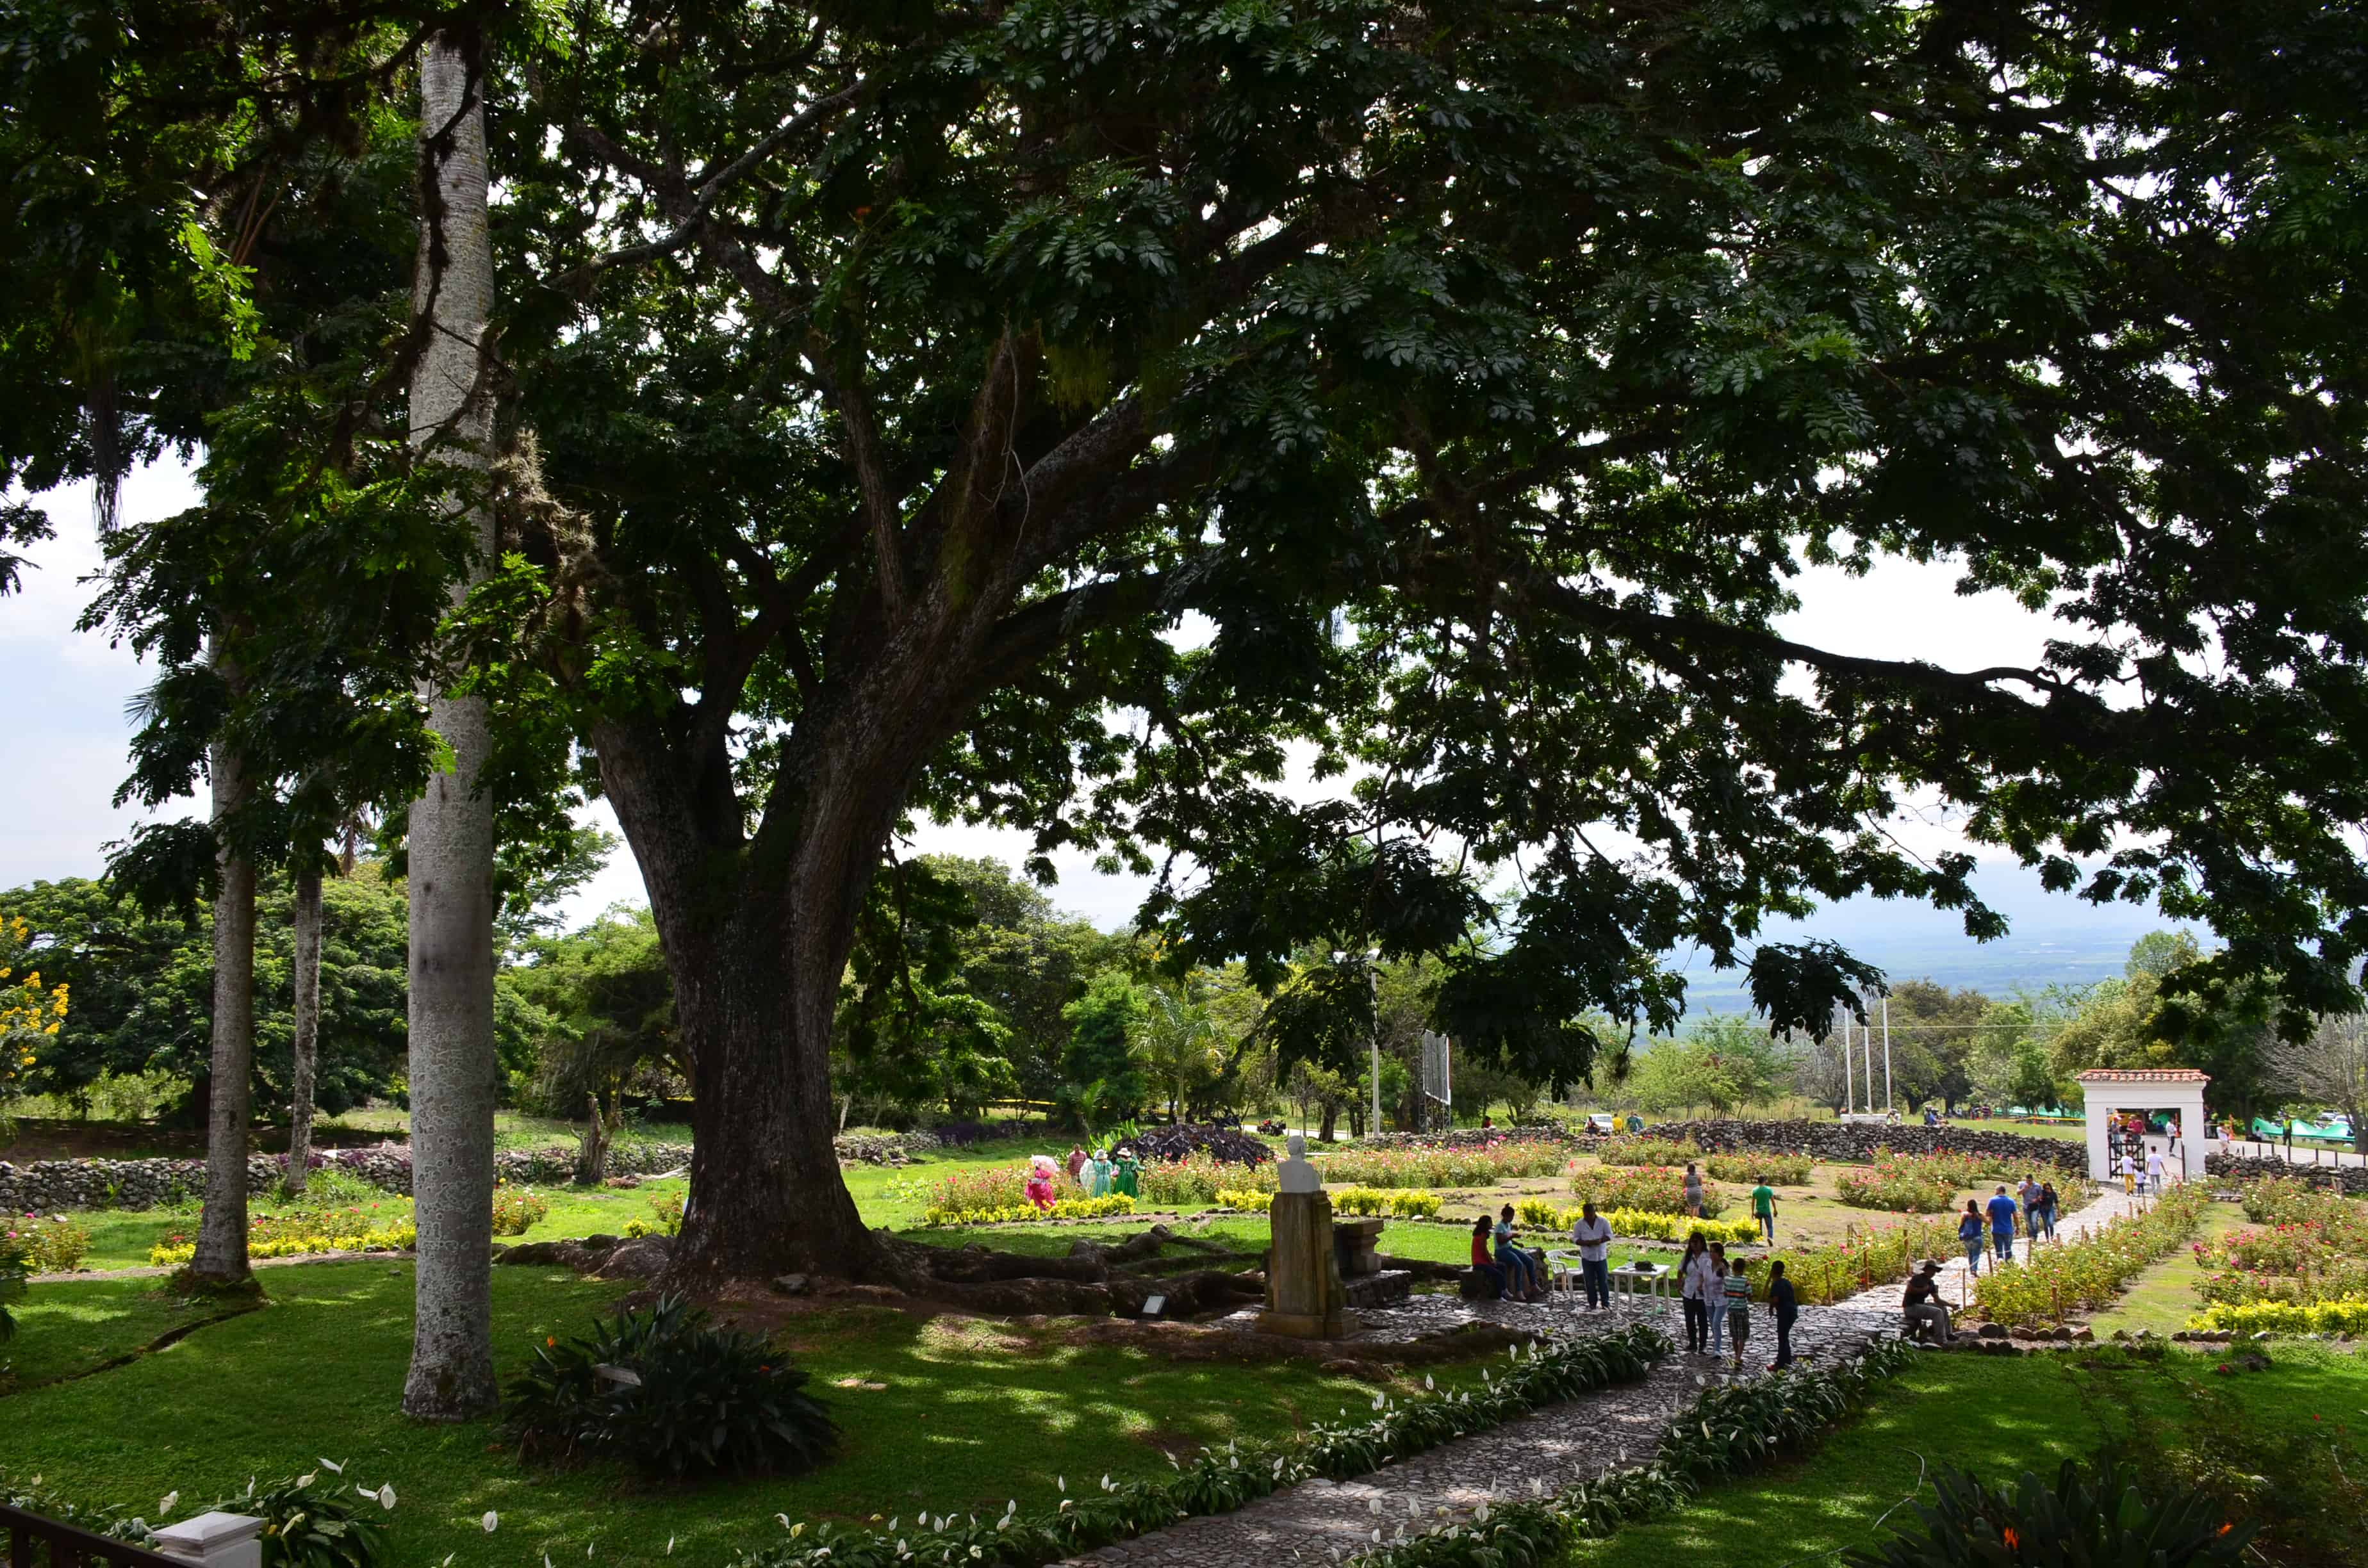 The tree at Hacienda El Paraíso in Valle del Cauca, Colombia